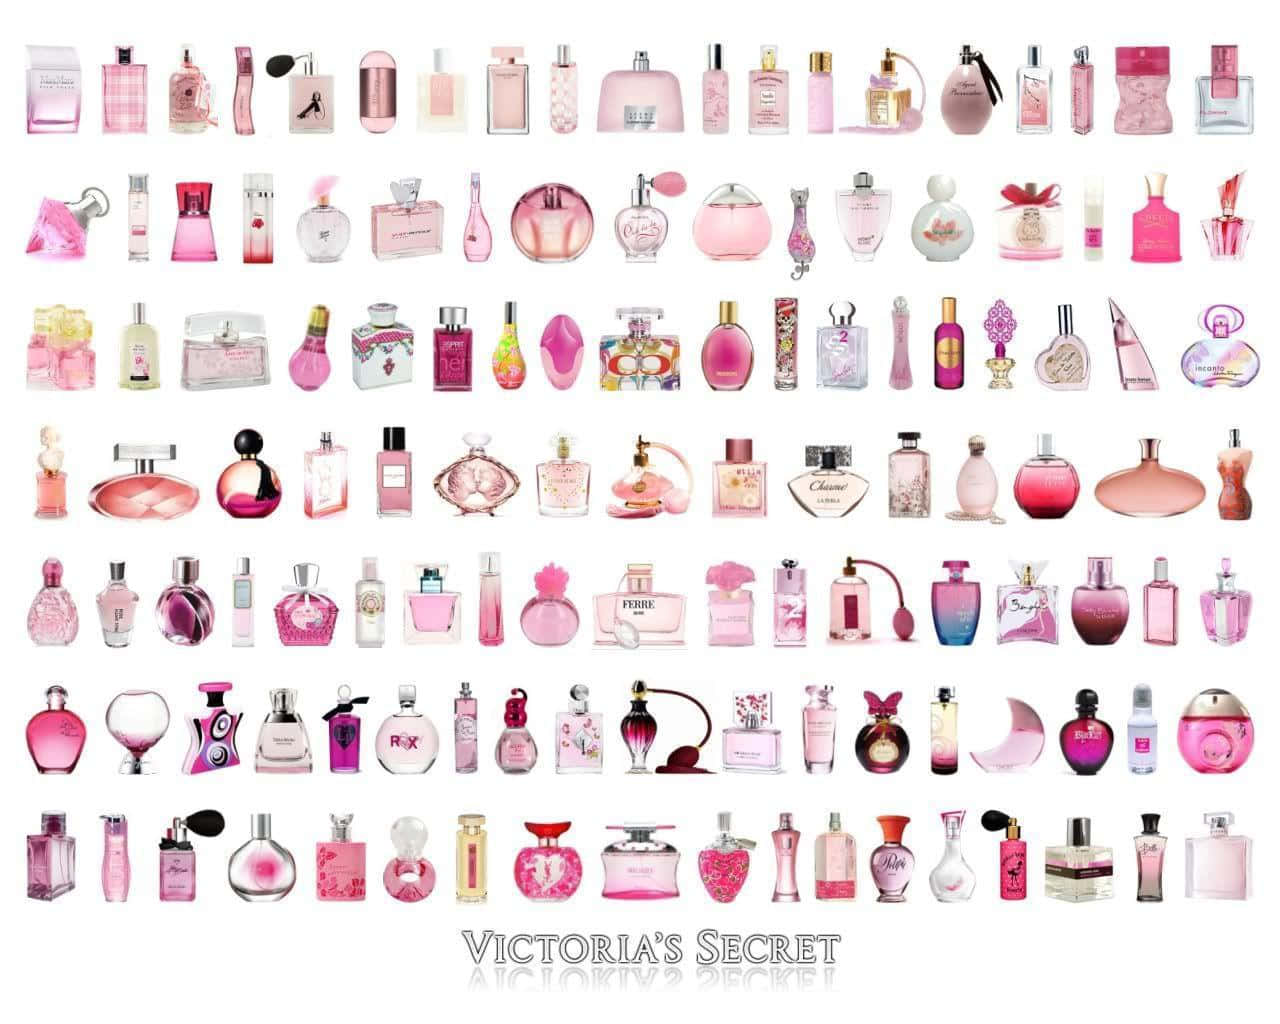 Leangeli Di Victoria's Secret Mostrano L'ultima Collezione